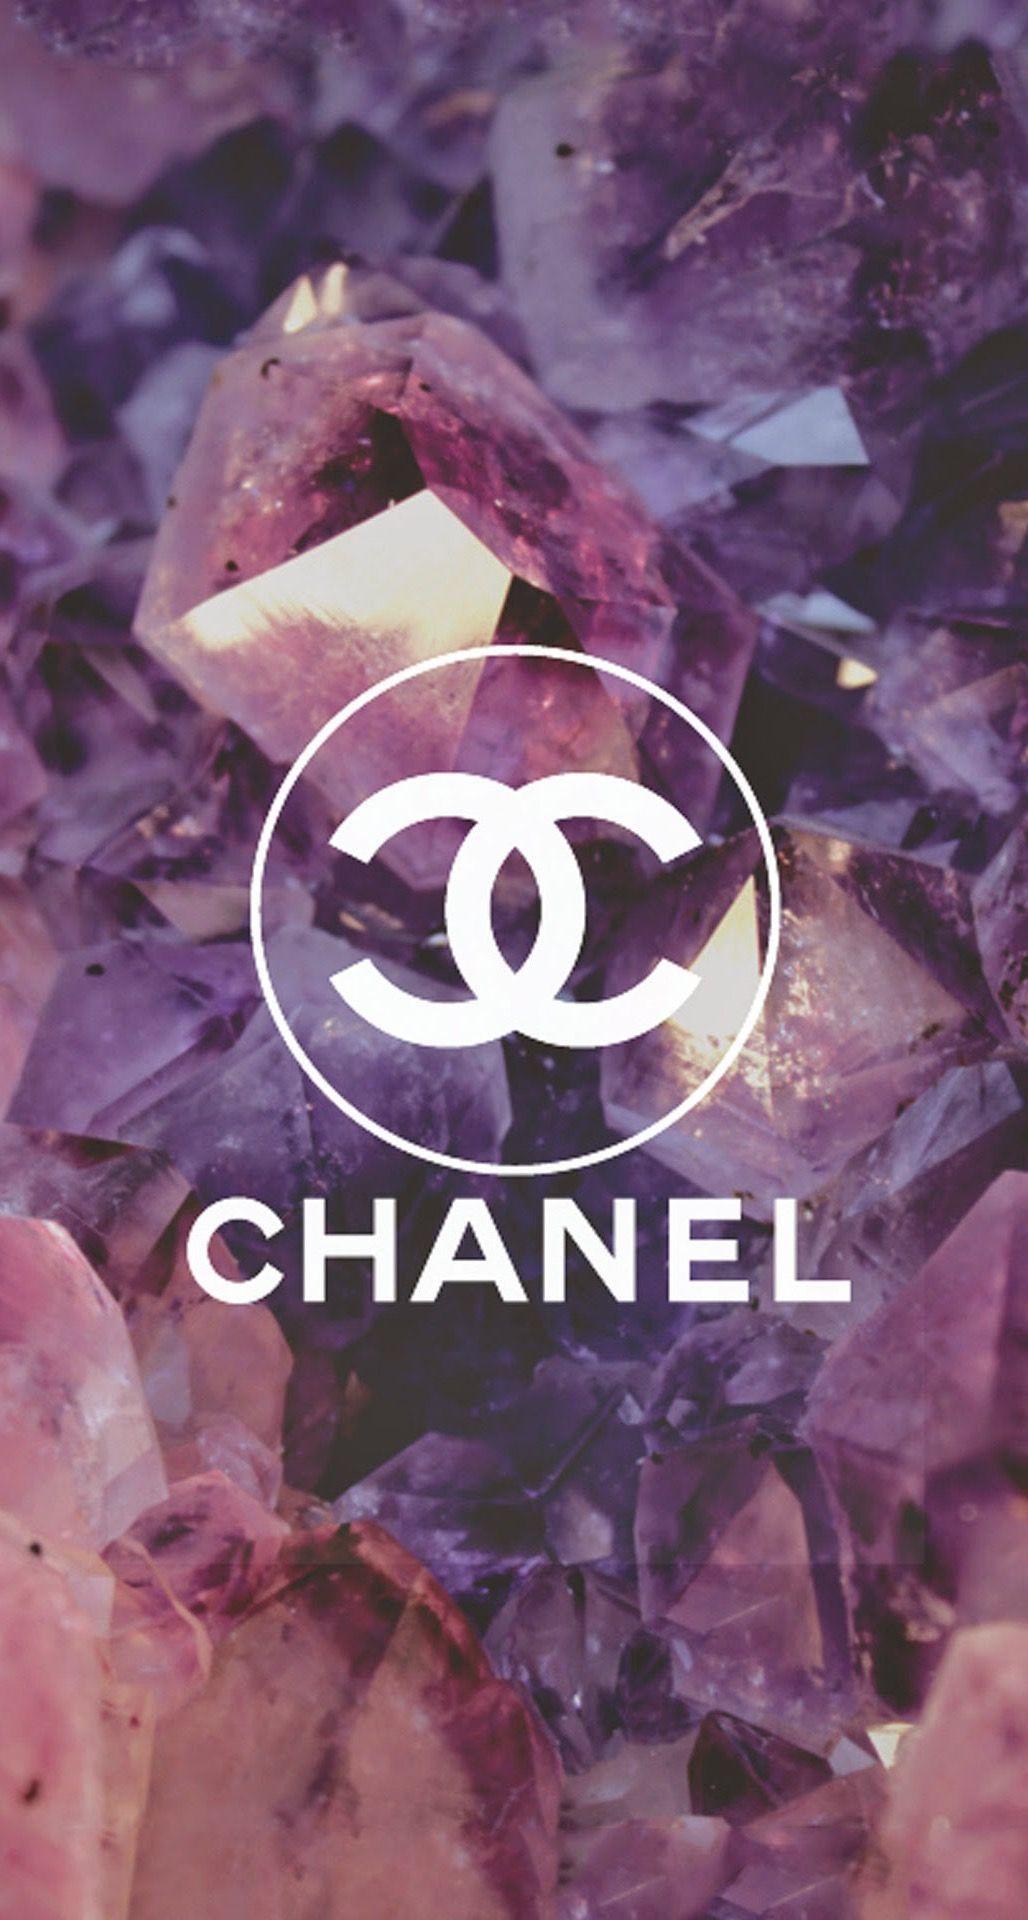 Chia Sẻ Top Hình Nền Chanel Logo Đẹp Ấn Tượng Cho Máy Tính Và Điện Thoại   Top 10 Hà Nội